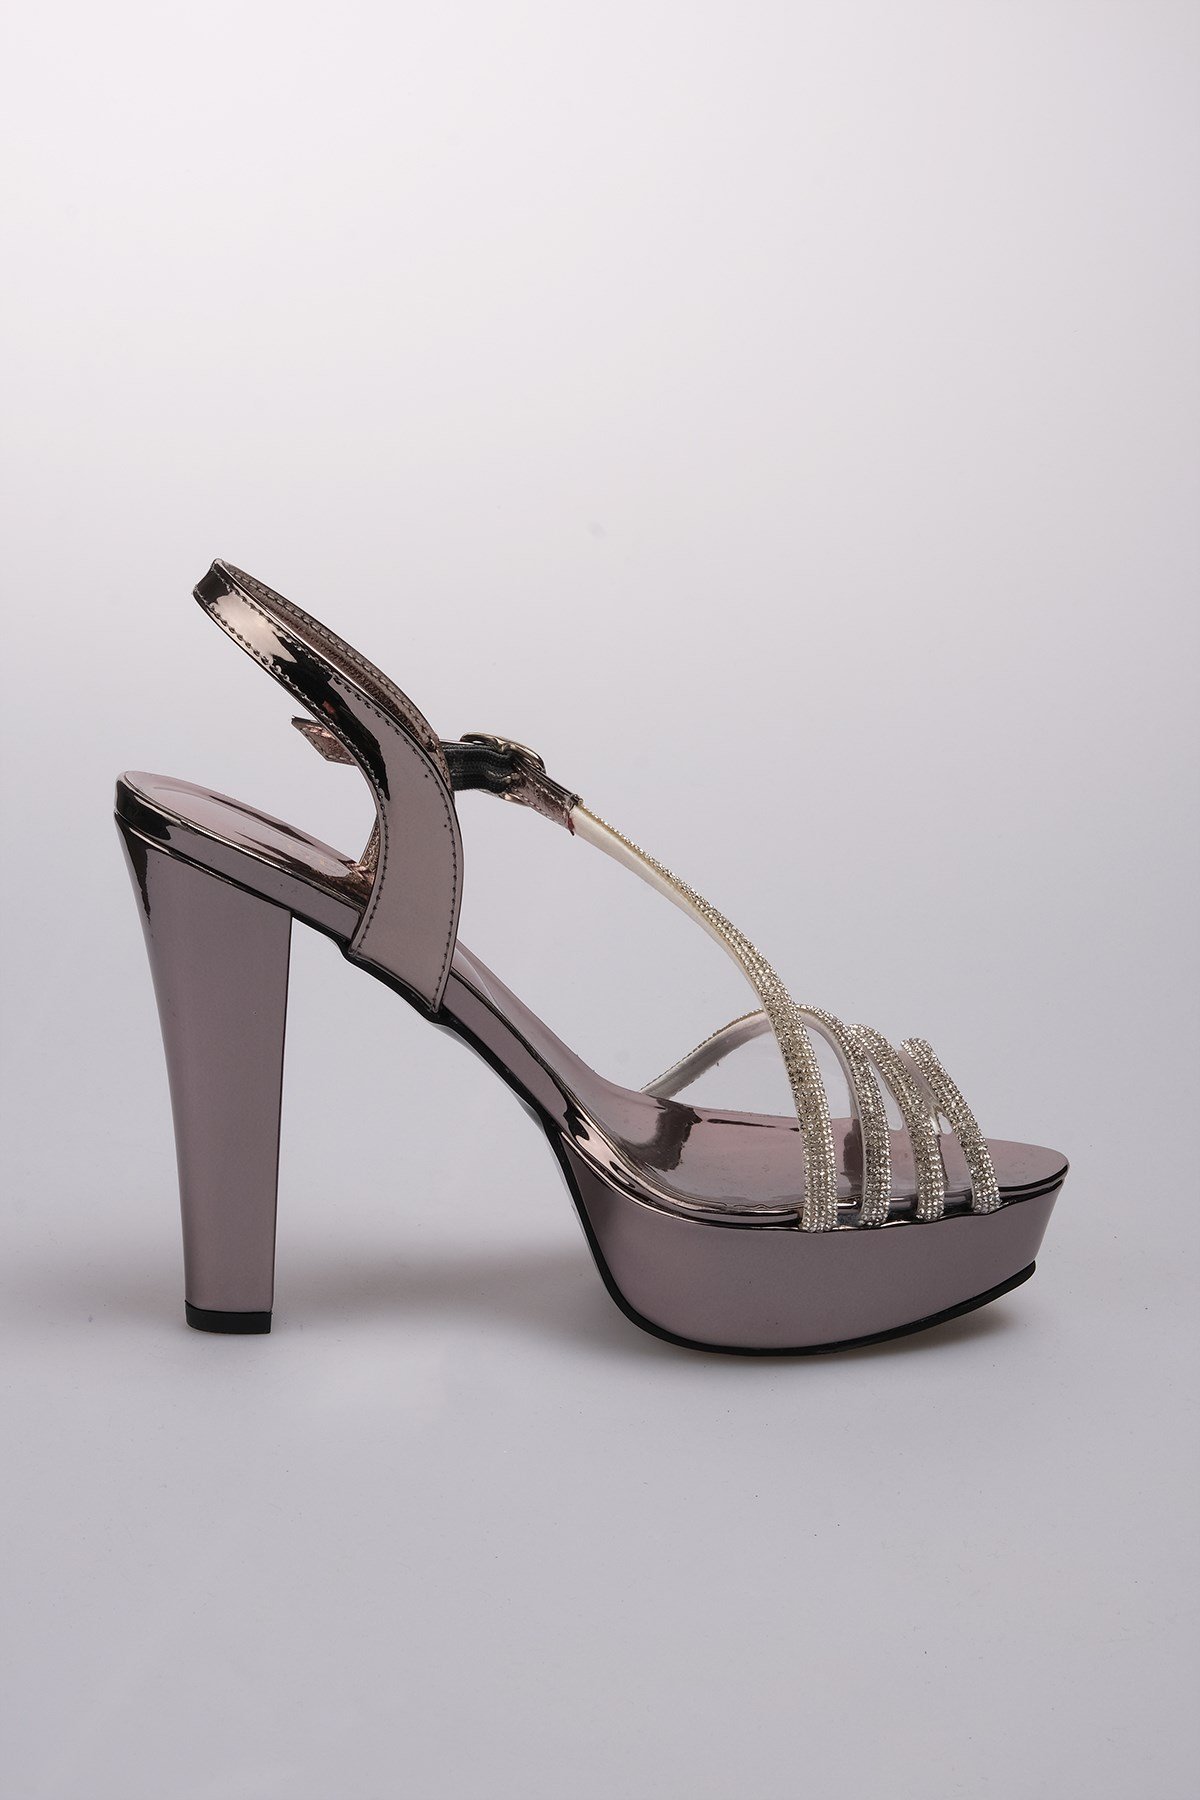 Mio Gusto 3 Sıra Taşlı Kurşun Renk Kadın Platformlu Topuklu Abiye Ayakkabı